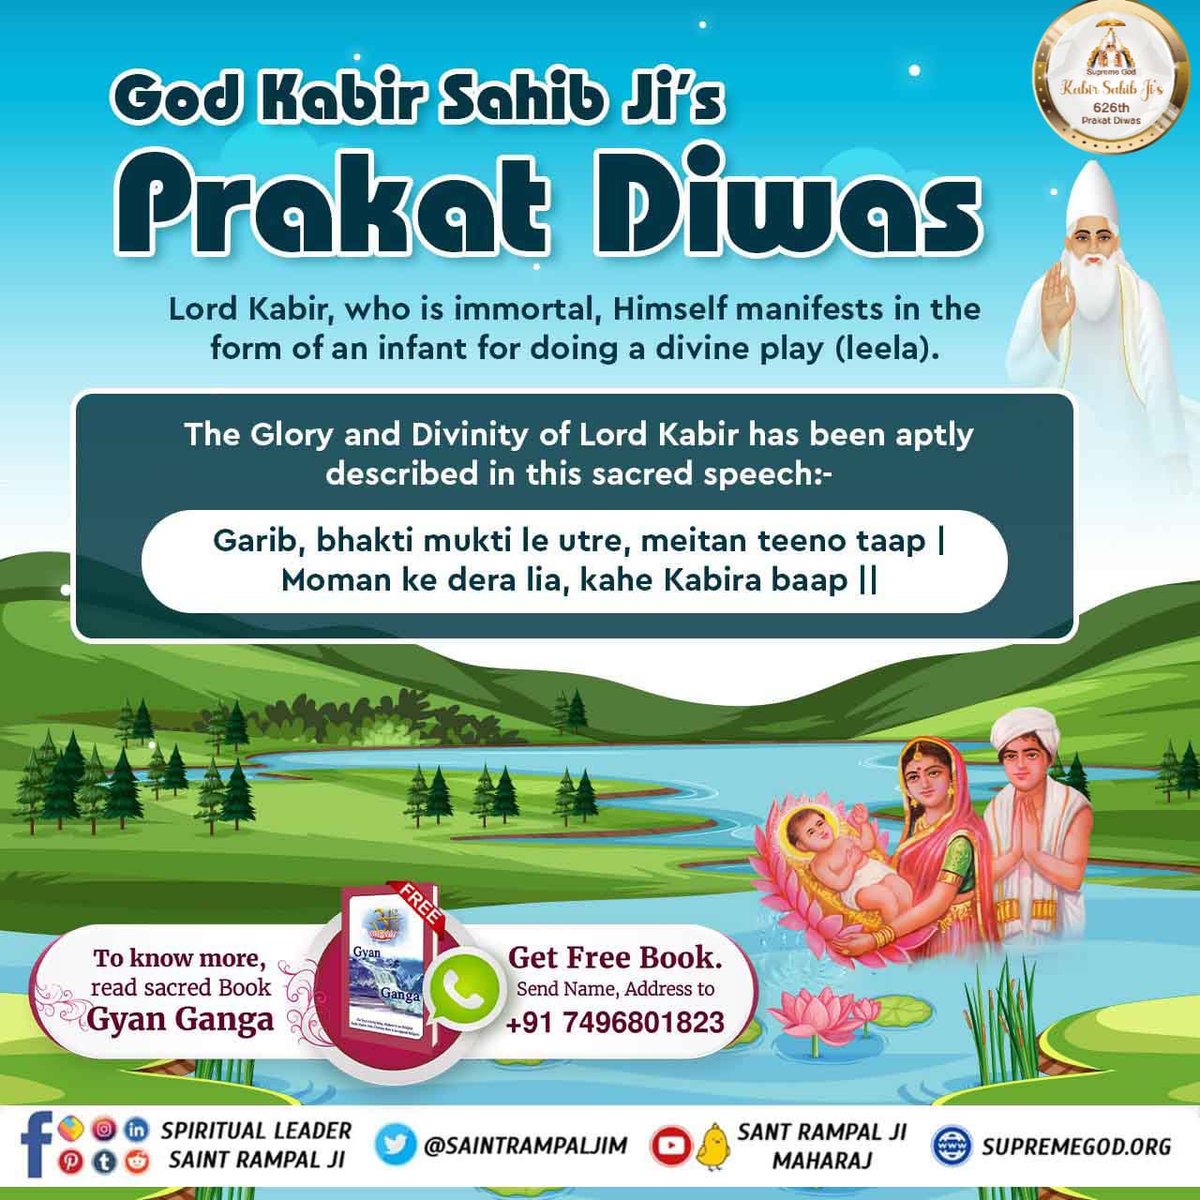 #કબીરપરમેશ્વરની_પ્રગટલીલા
God Kabir Sahib Ji's Prakat Diwas
Lord Kabir, who is immortal, Himself manifests in the form of an infant for doing a divine play (leela).

The Glory and Divinity of Lord Kabir has been aptly described in this sacred speech:-
God Kabir Prakat Diwas